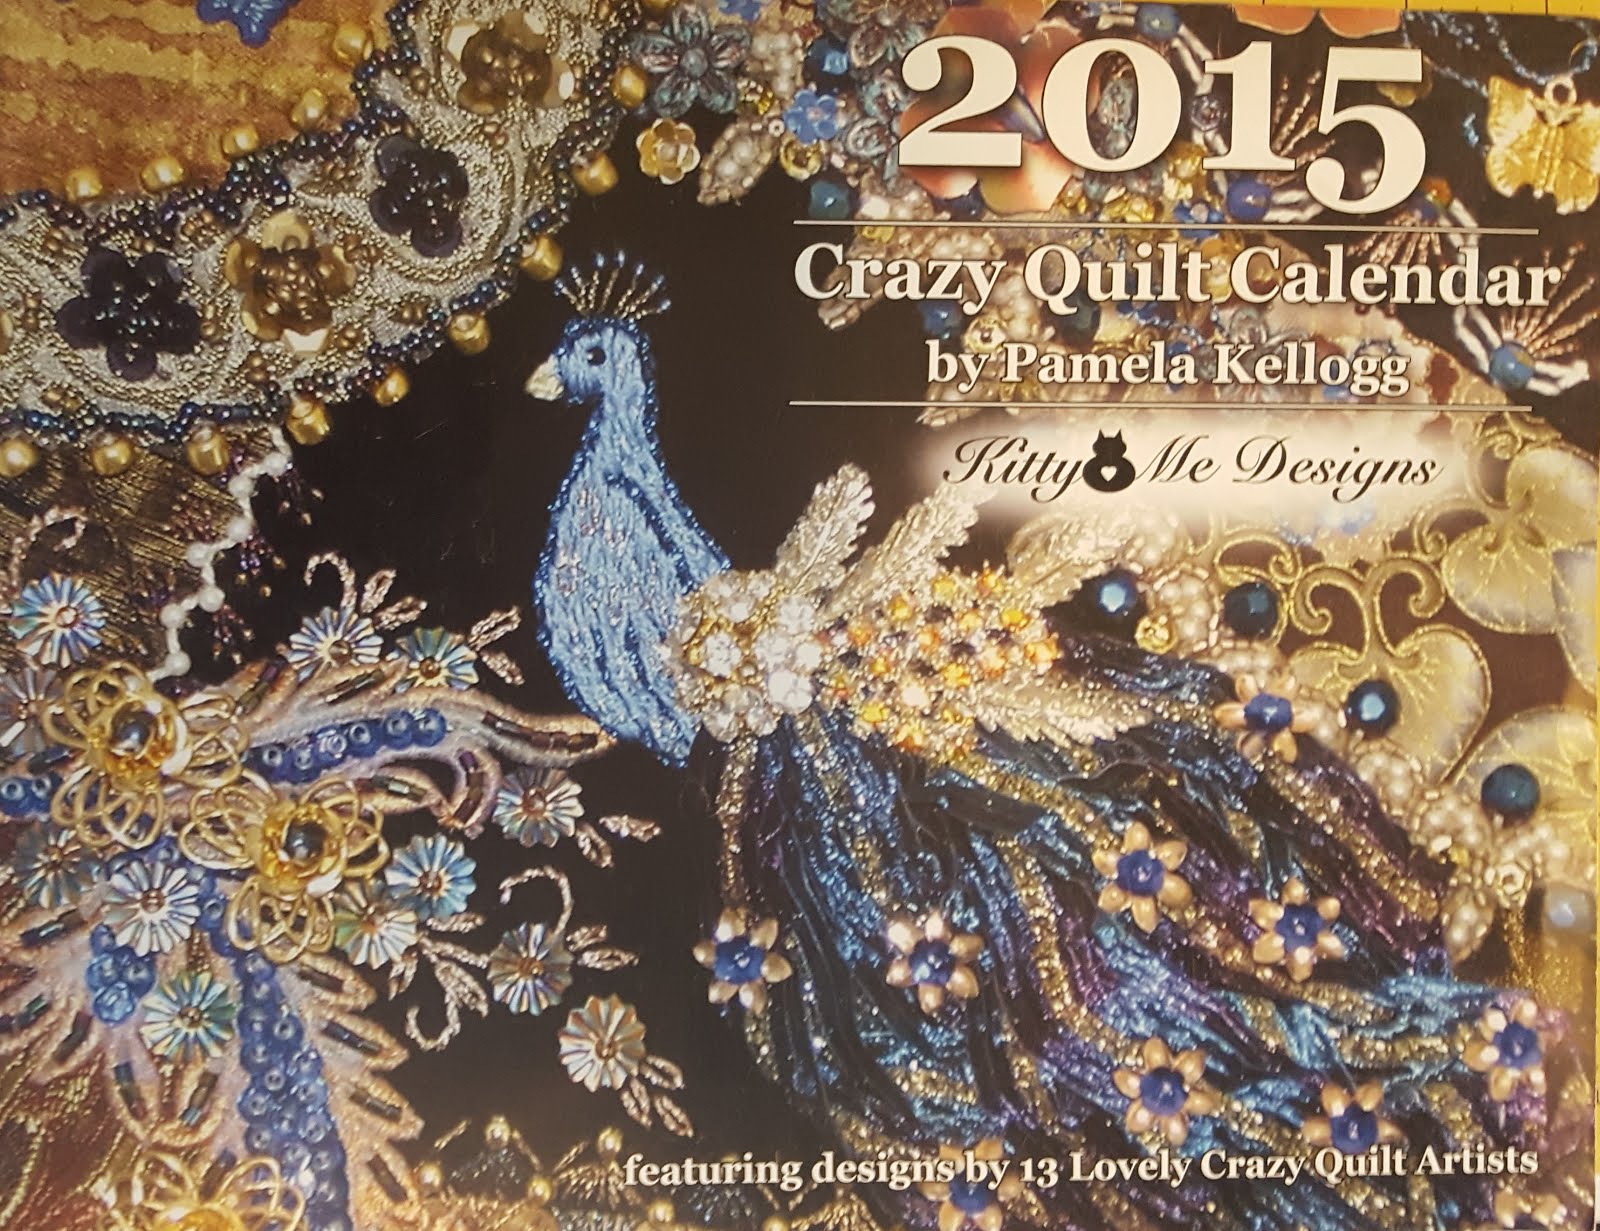 2015 Crazy Quilt Calendar by Pamela Kellogg